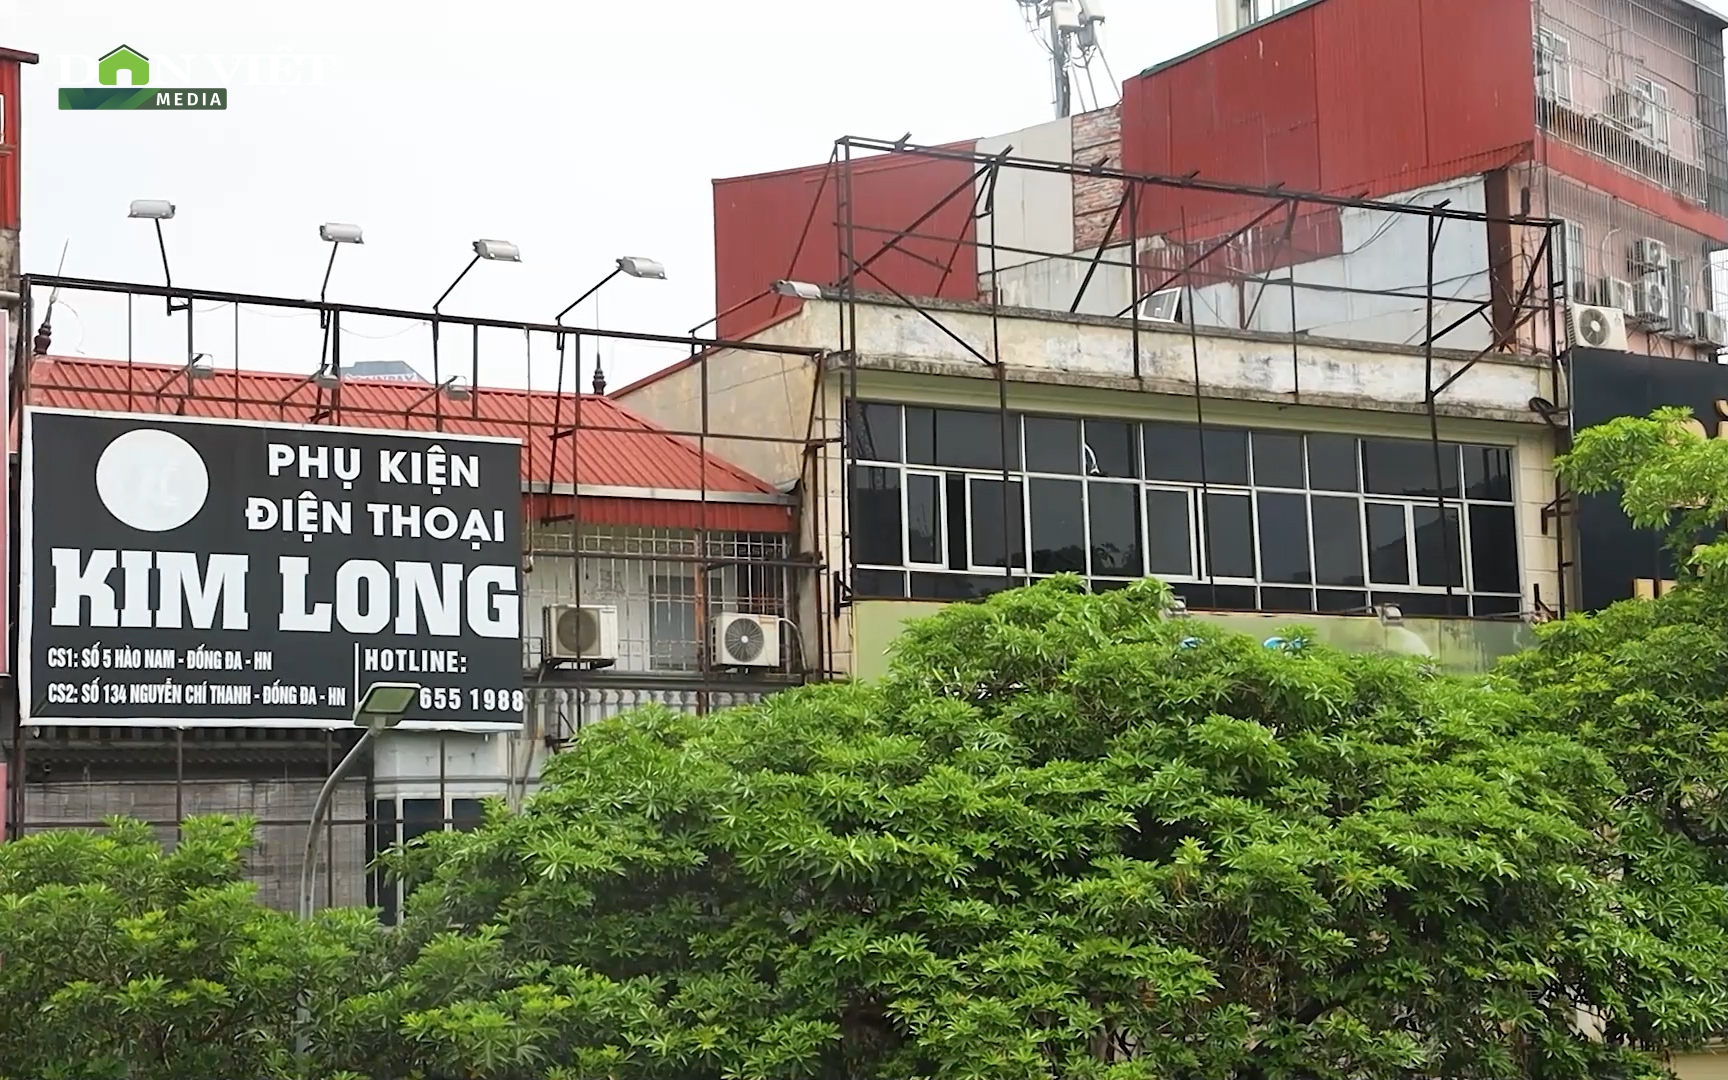 Video: Hàng loạt biển quảng cáo trơ khung, hoen gỉ, xuống cấp ở Hà Nội